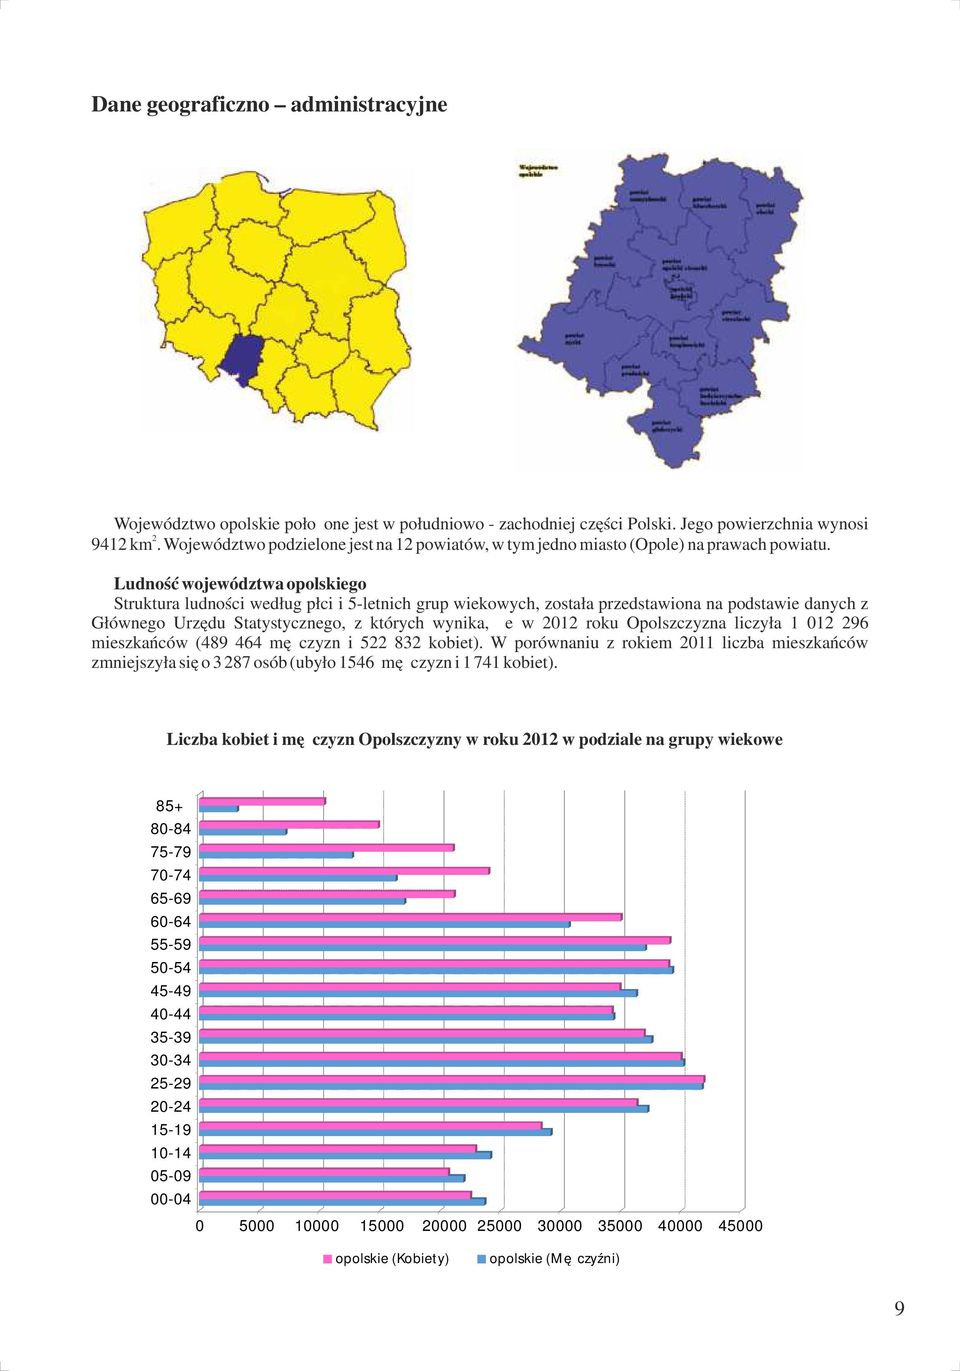 Ludność województwa opolskiego Struktura ludności według płci i -letnich grup wiekowych, została przedstawiona na podstawie danych z Głównego Urzędu Statystycznego, z których